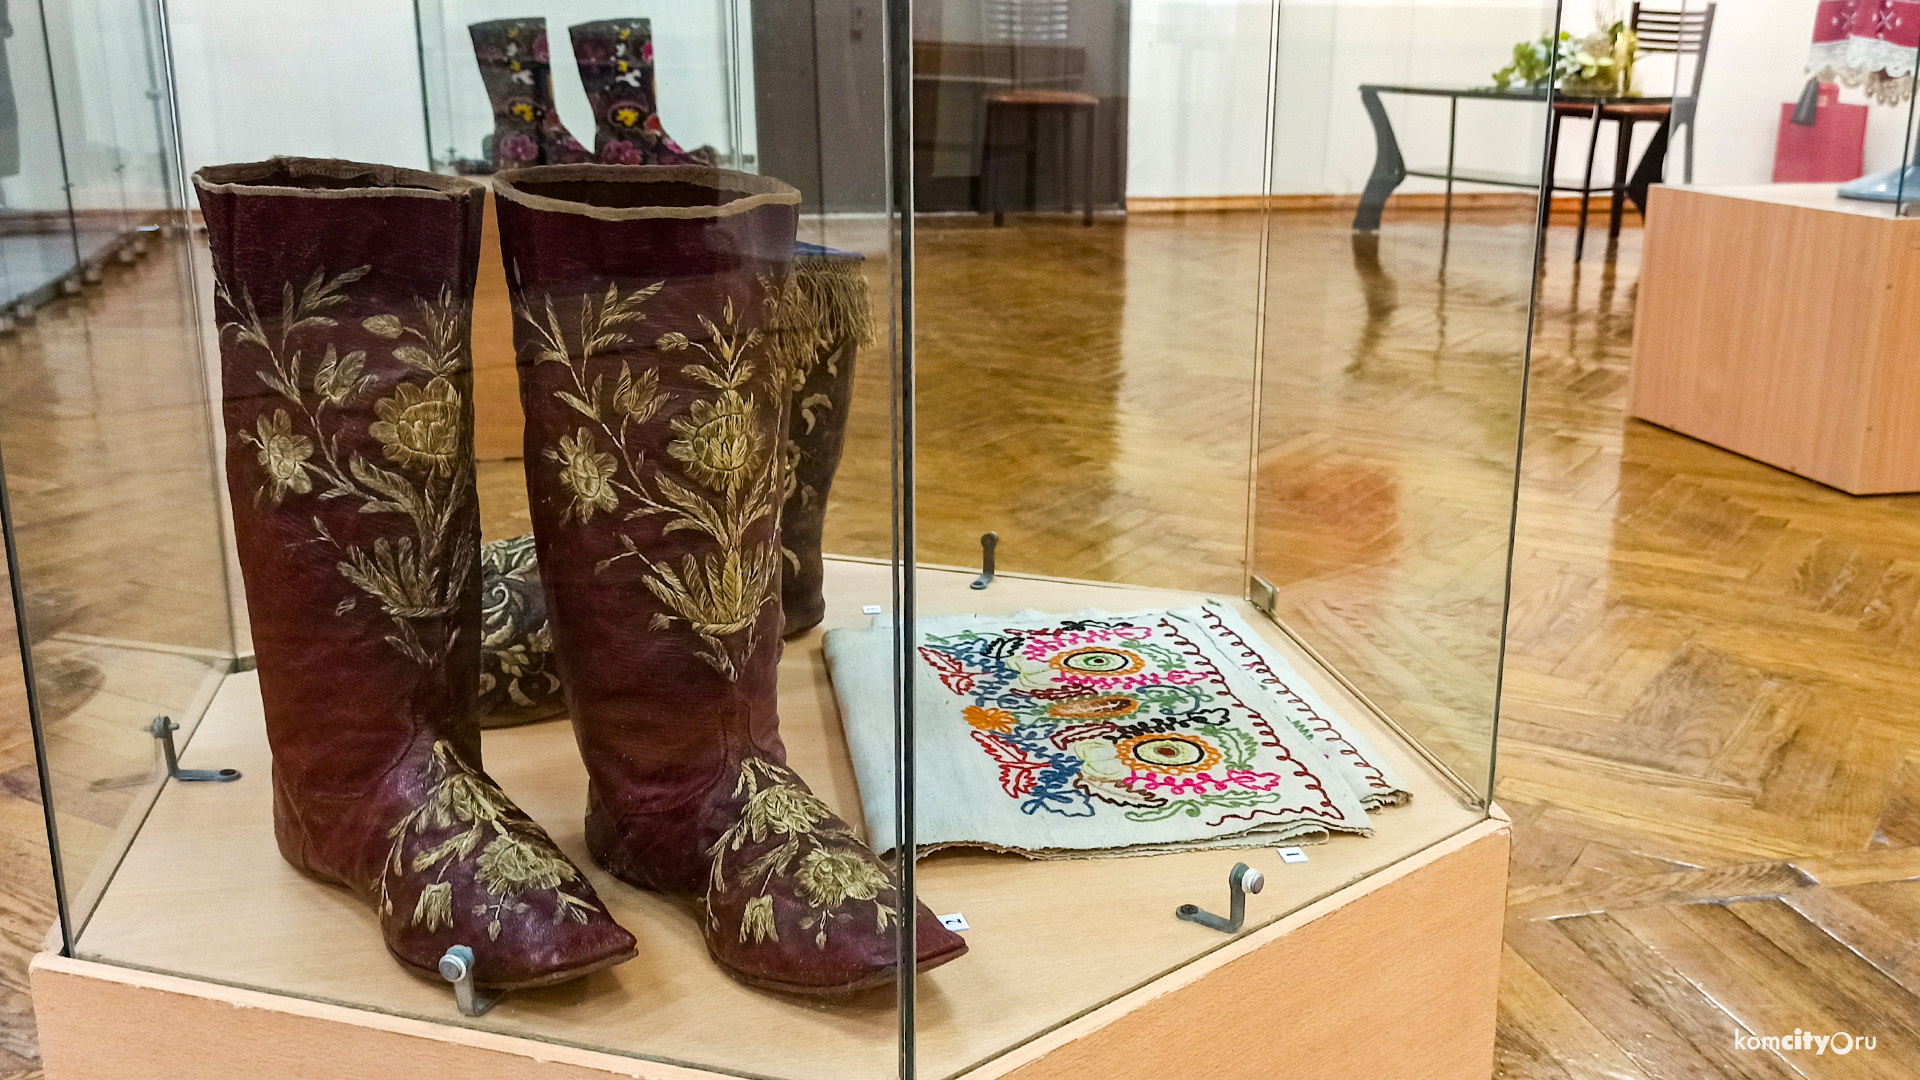 Комсомольчан приглашают принести в музей предметы народного искусства, сделанные своими руками